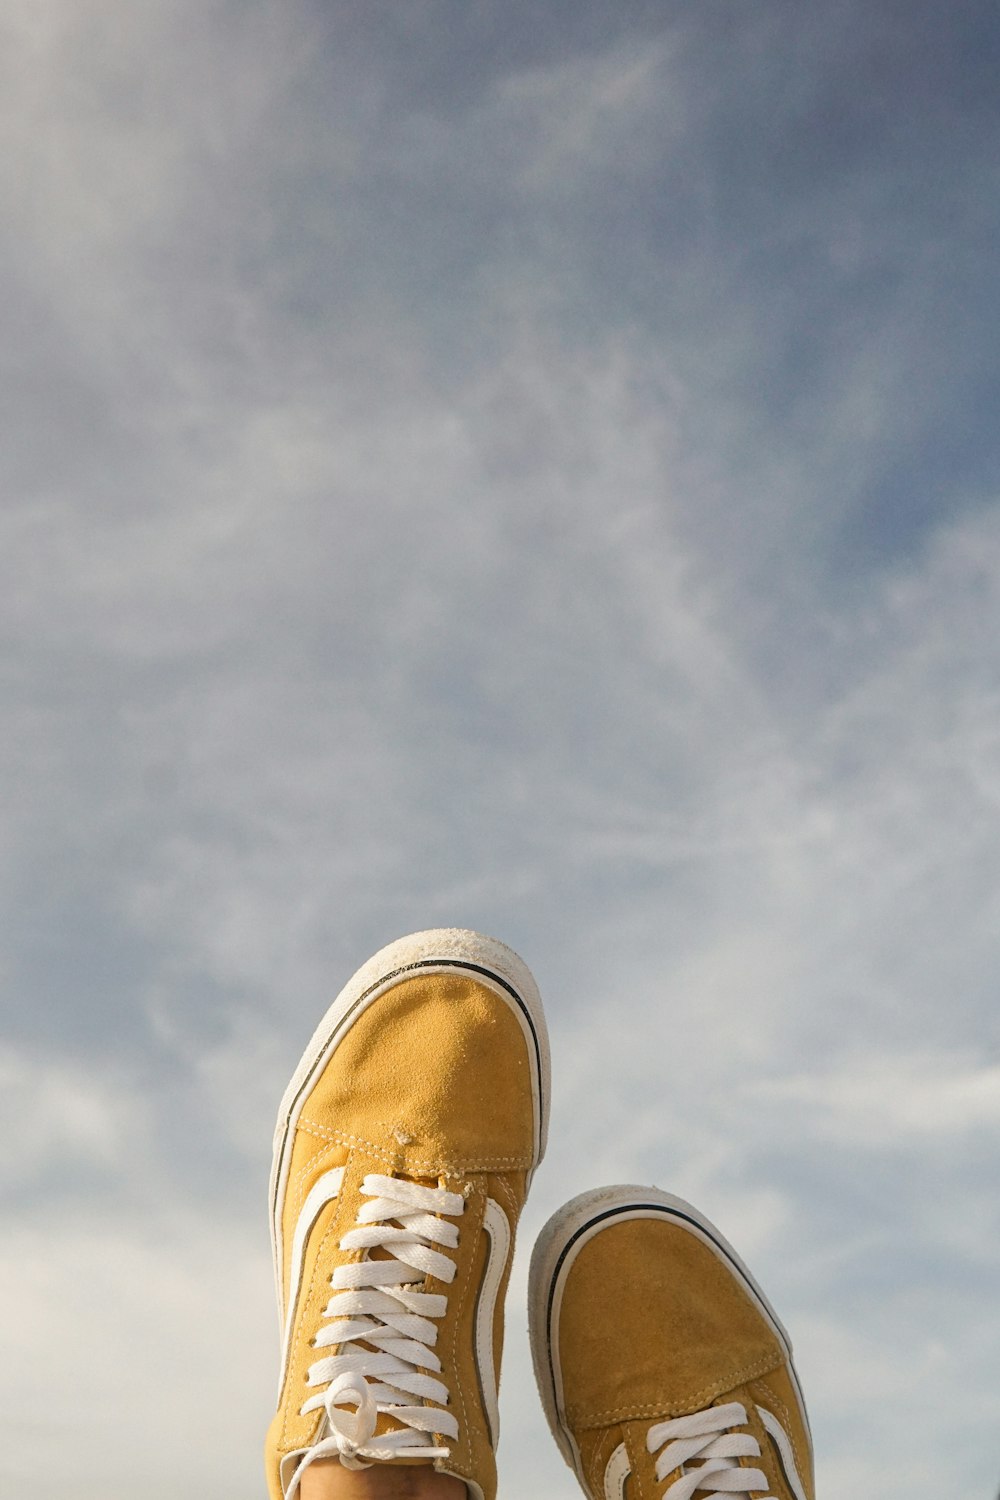 die Füße einer Person mit gelben Schuhen, die auf einem Felsvorsprung stehen